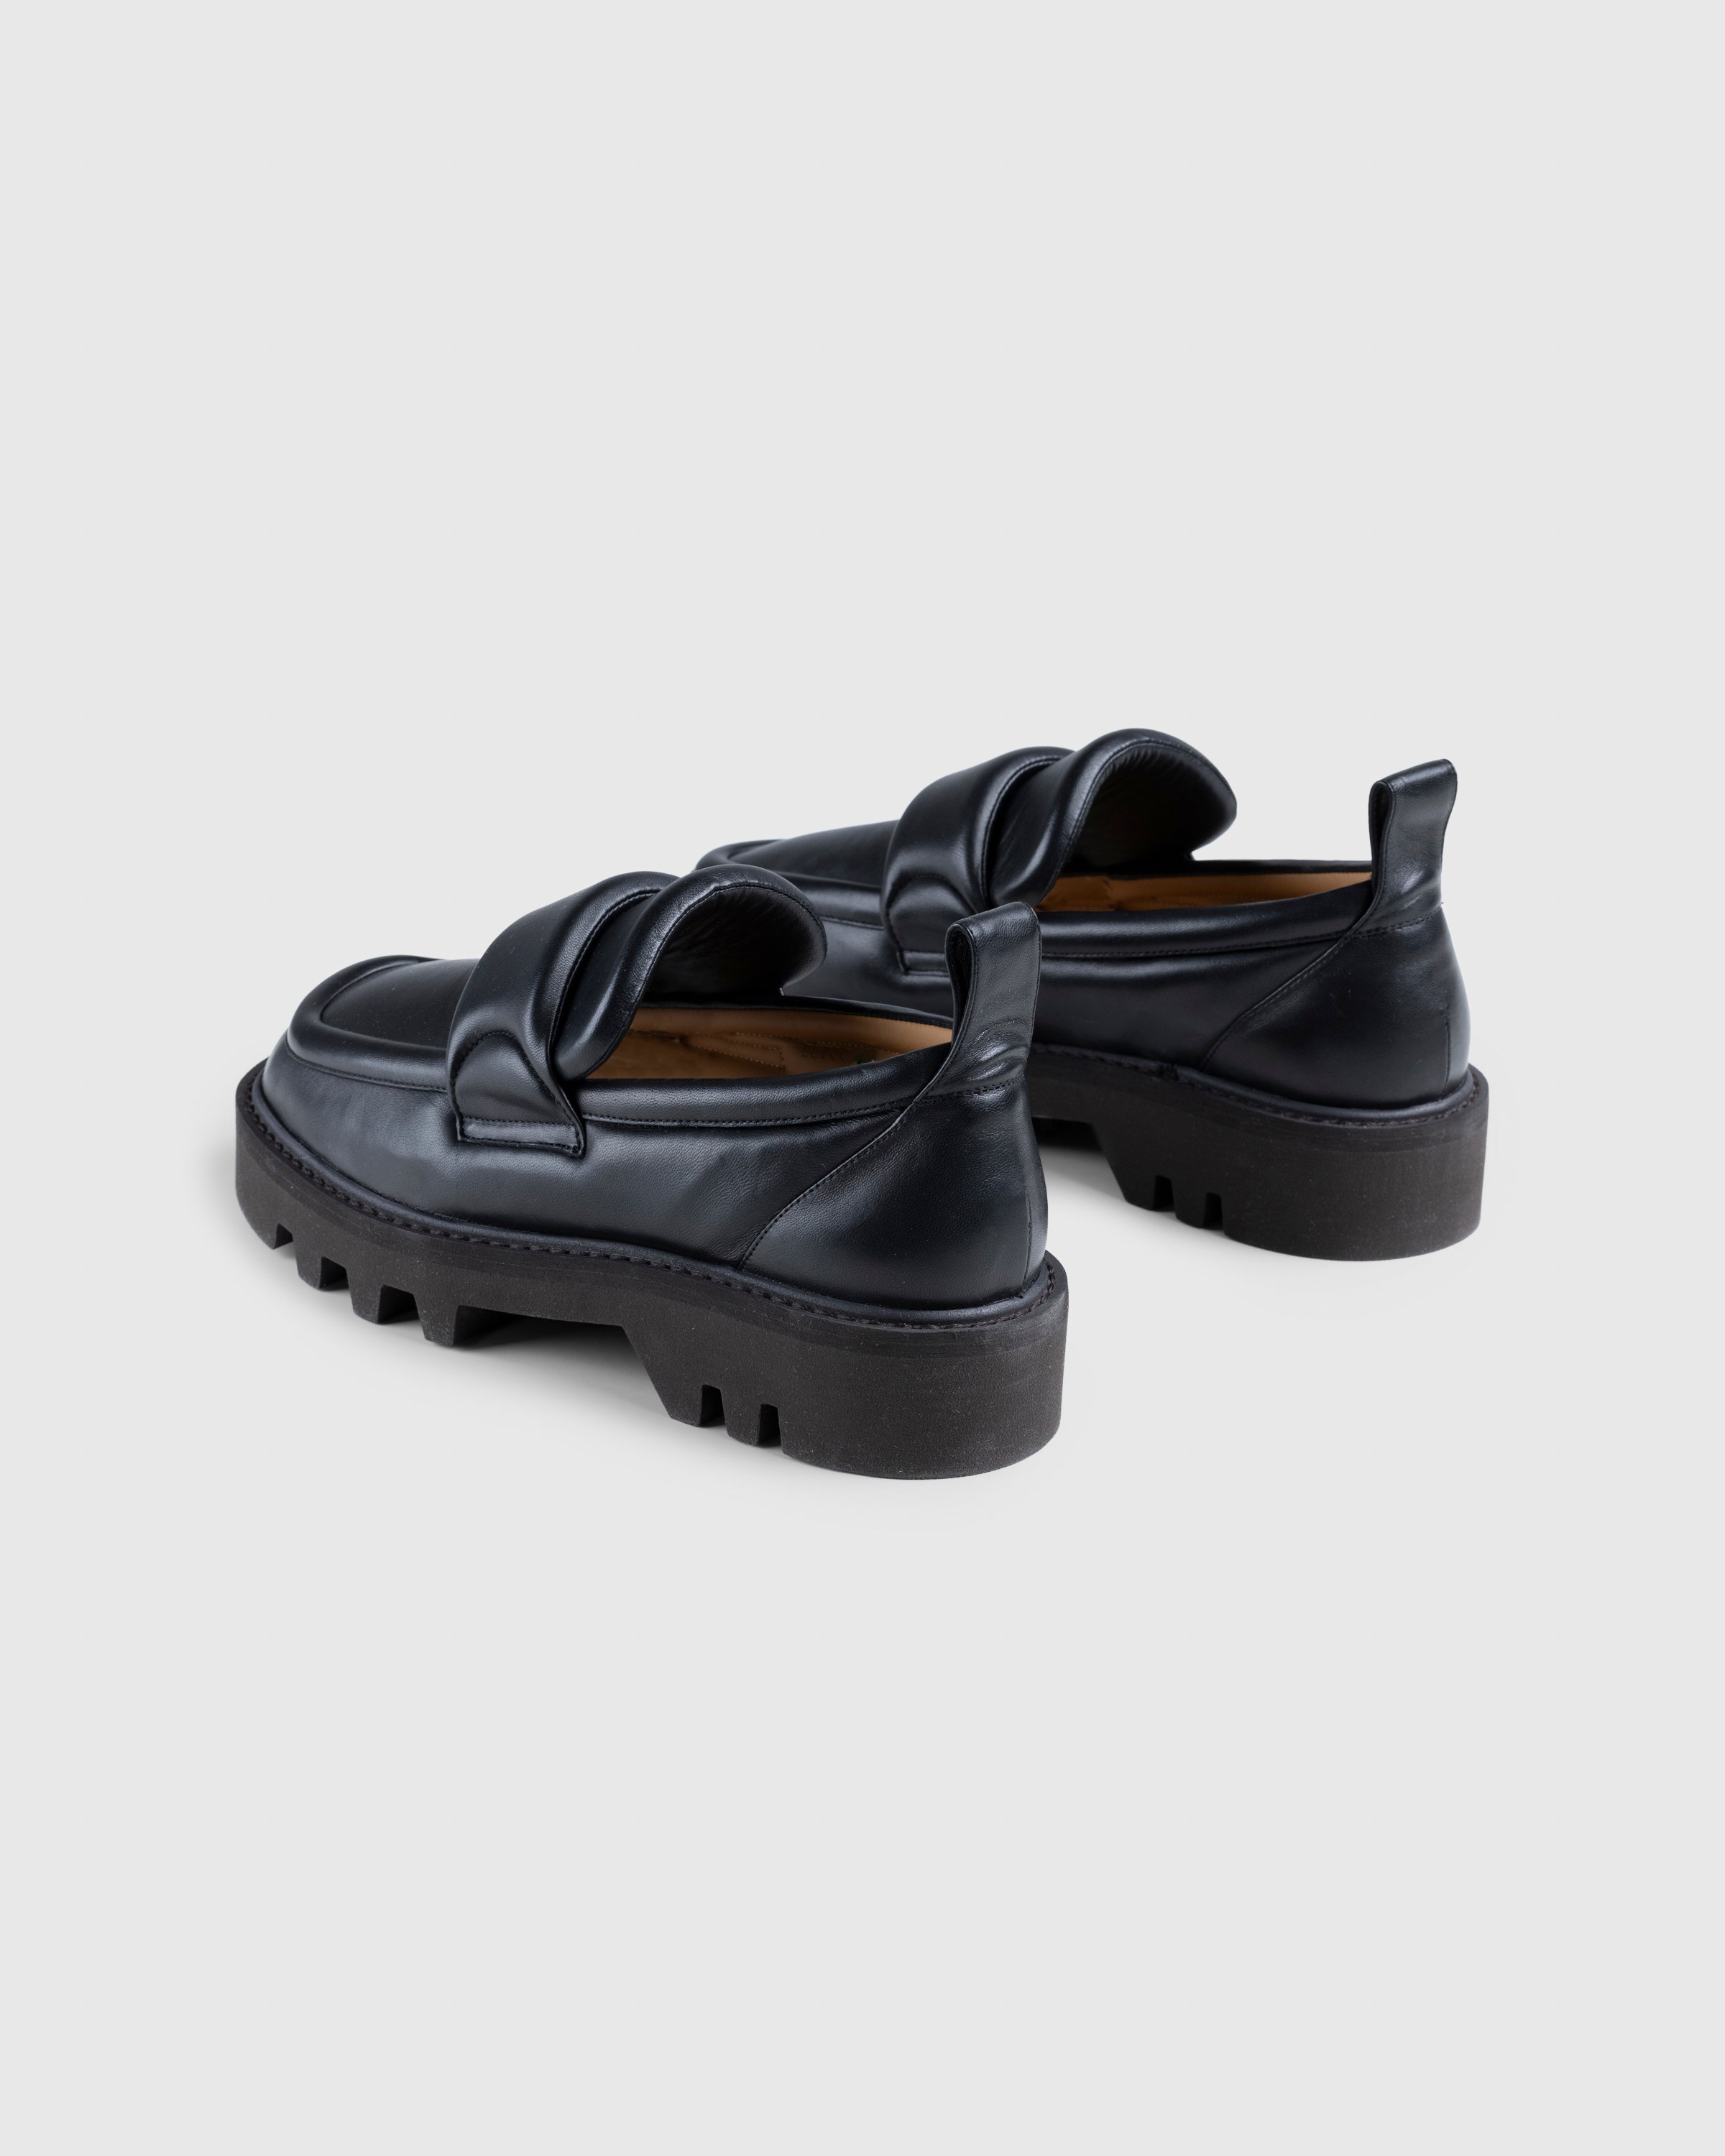 Dries van Noten - Padded Leather Loafers Black - Footwear - Black - Image 5